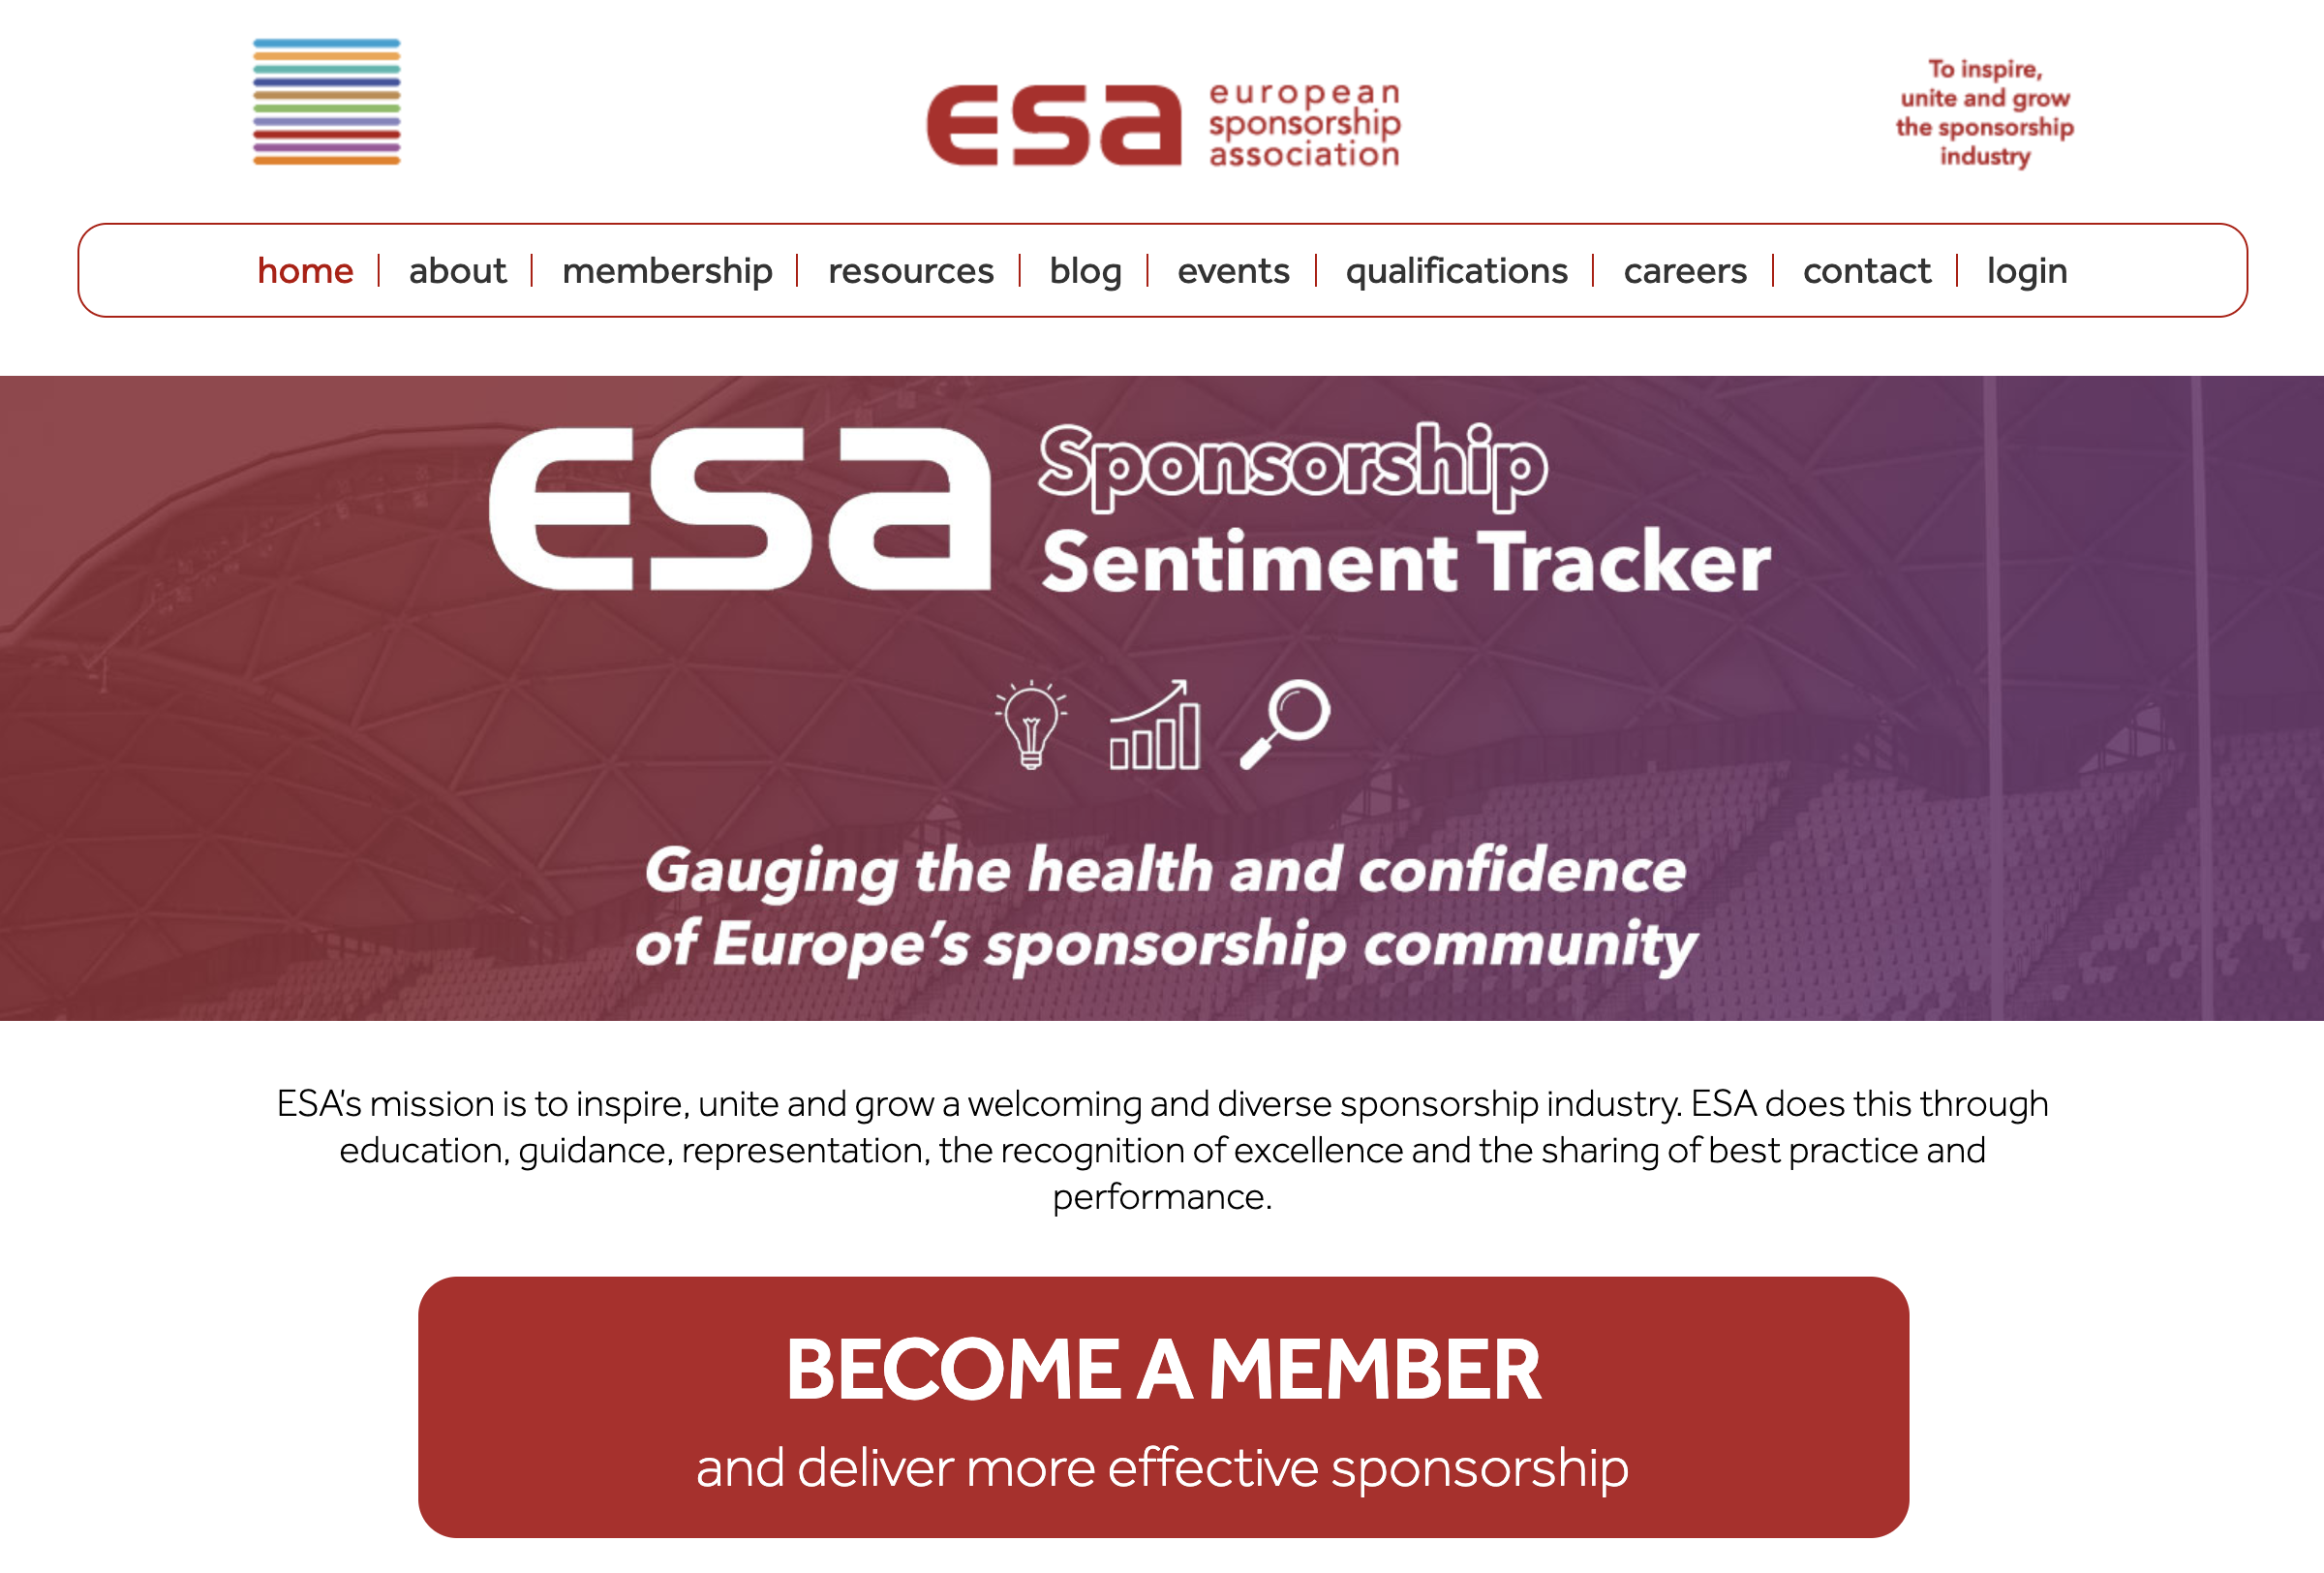 Link to European Sponsorship Association